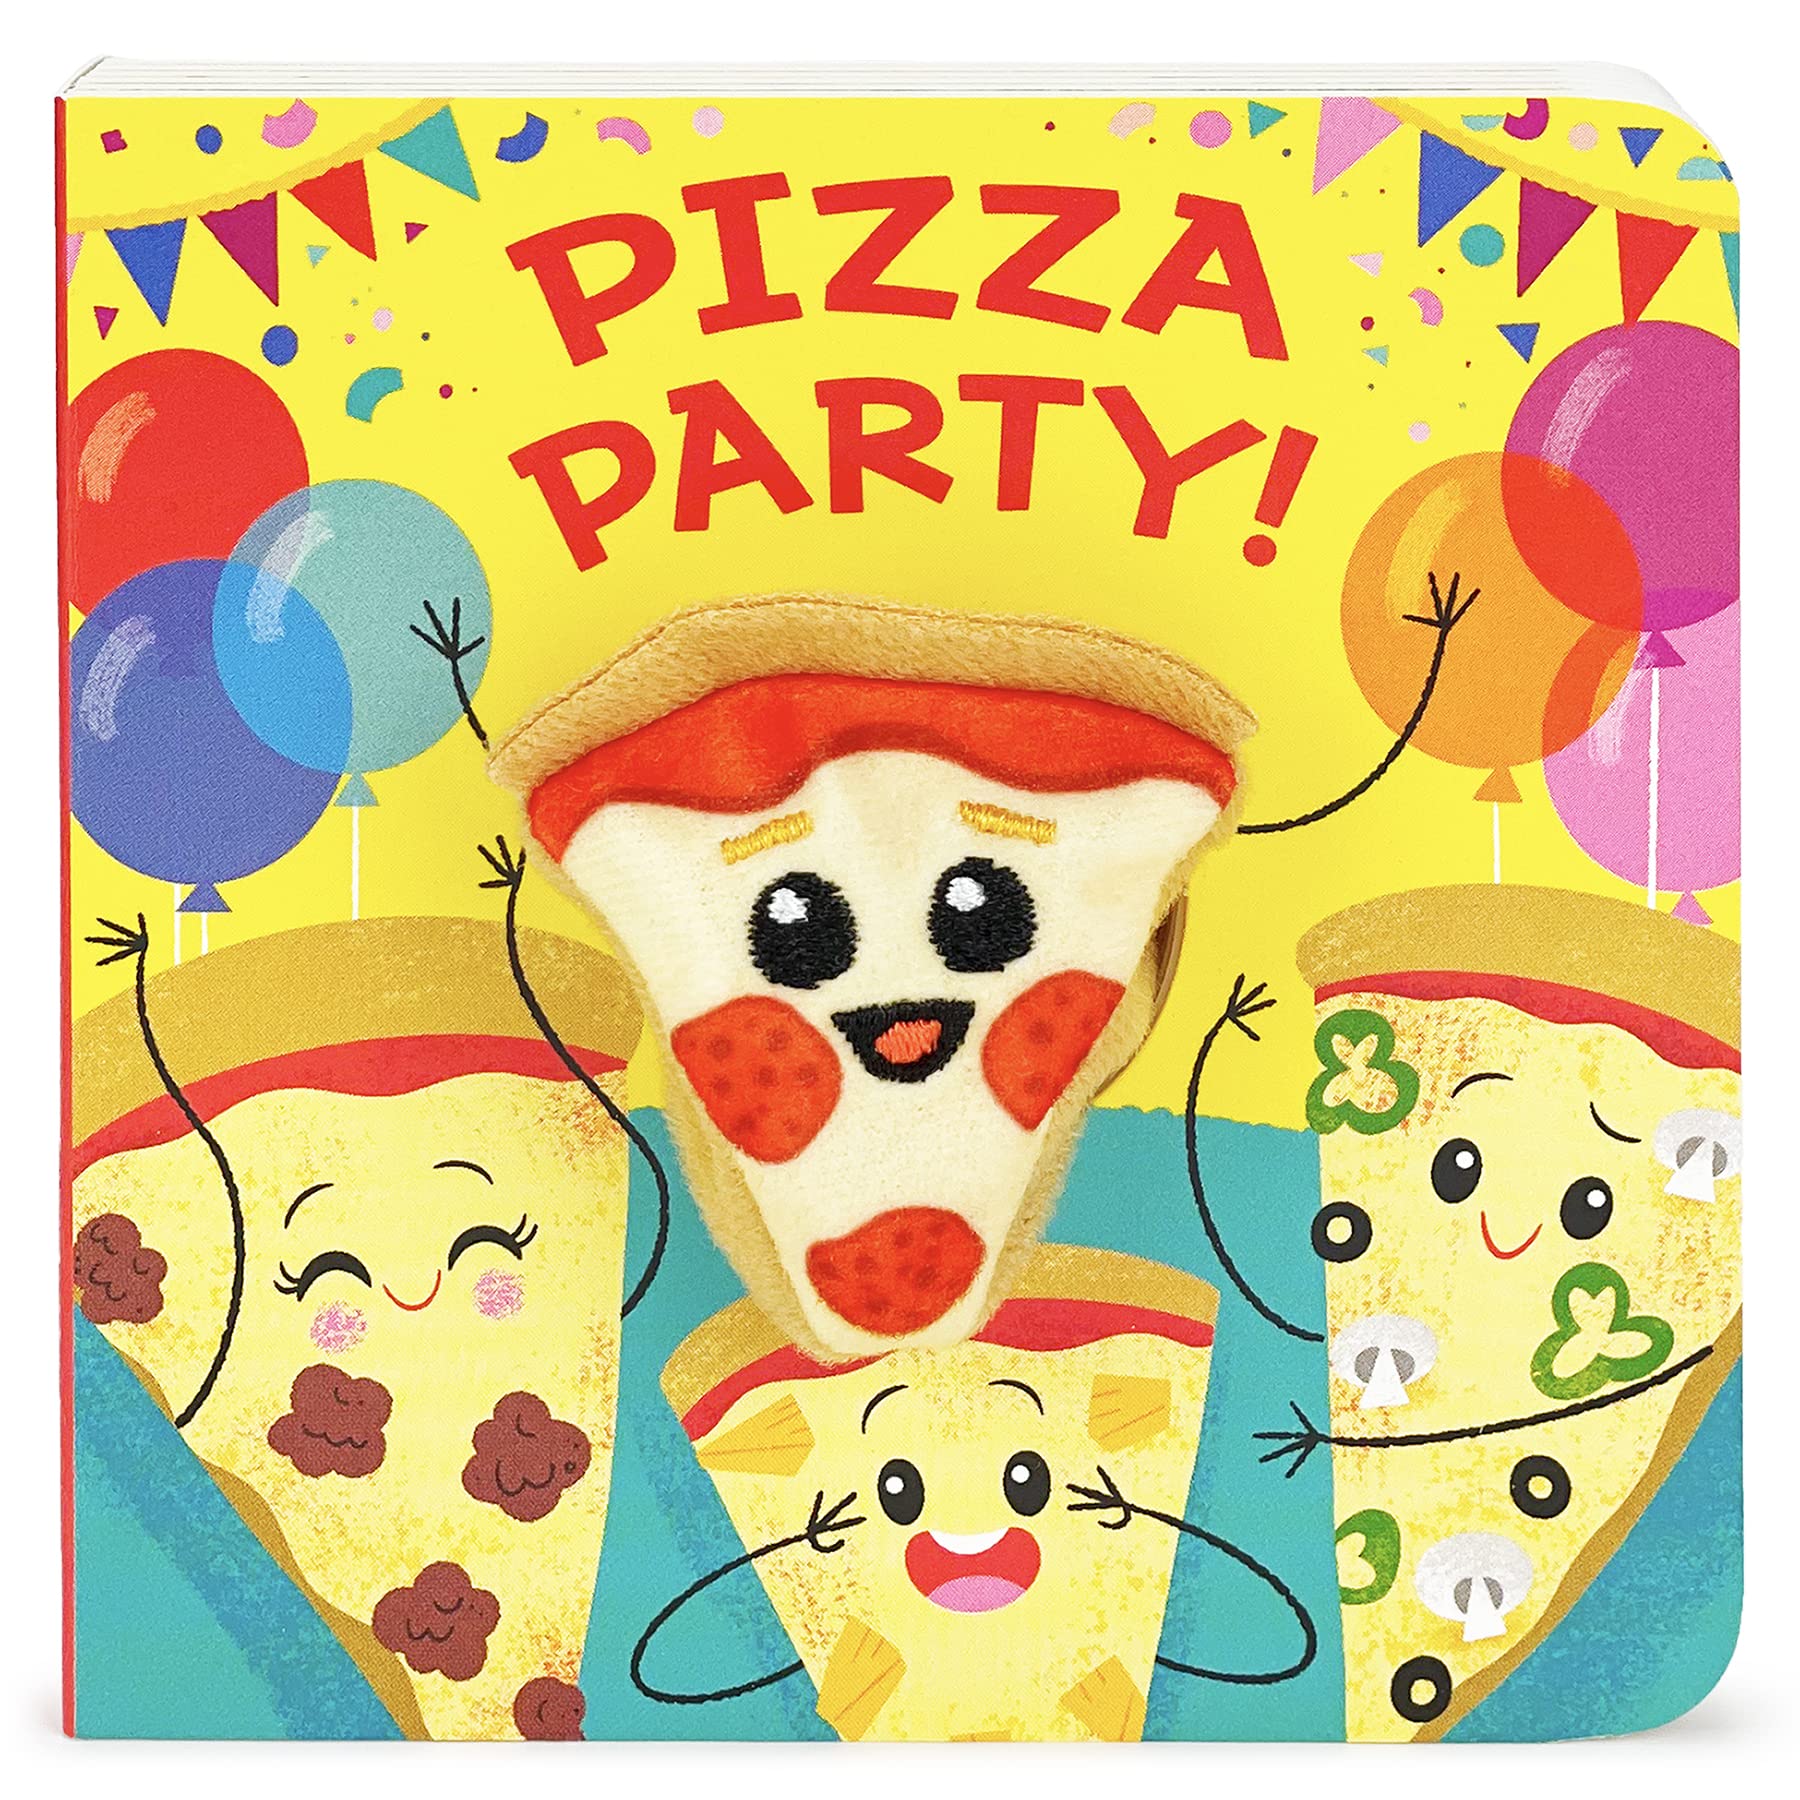 Pizza Party! Finger Puppet Board Book - Twinkle Twinkle Little One